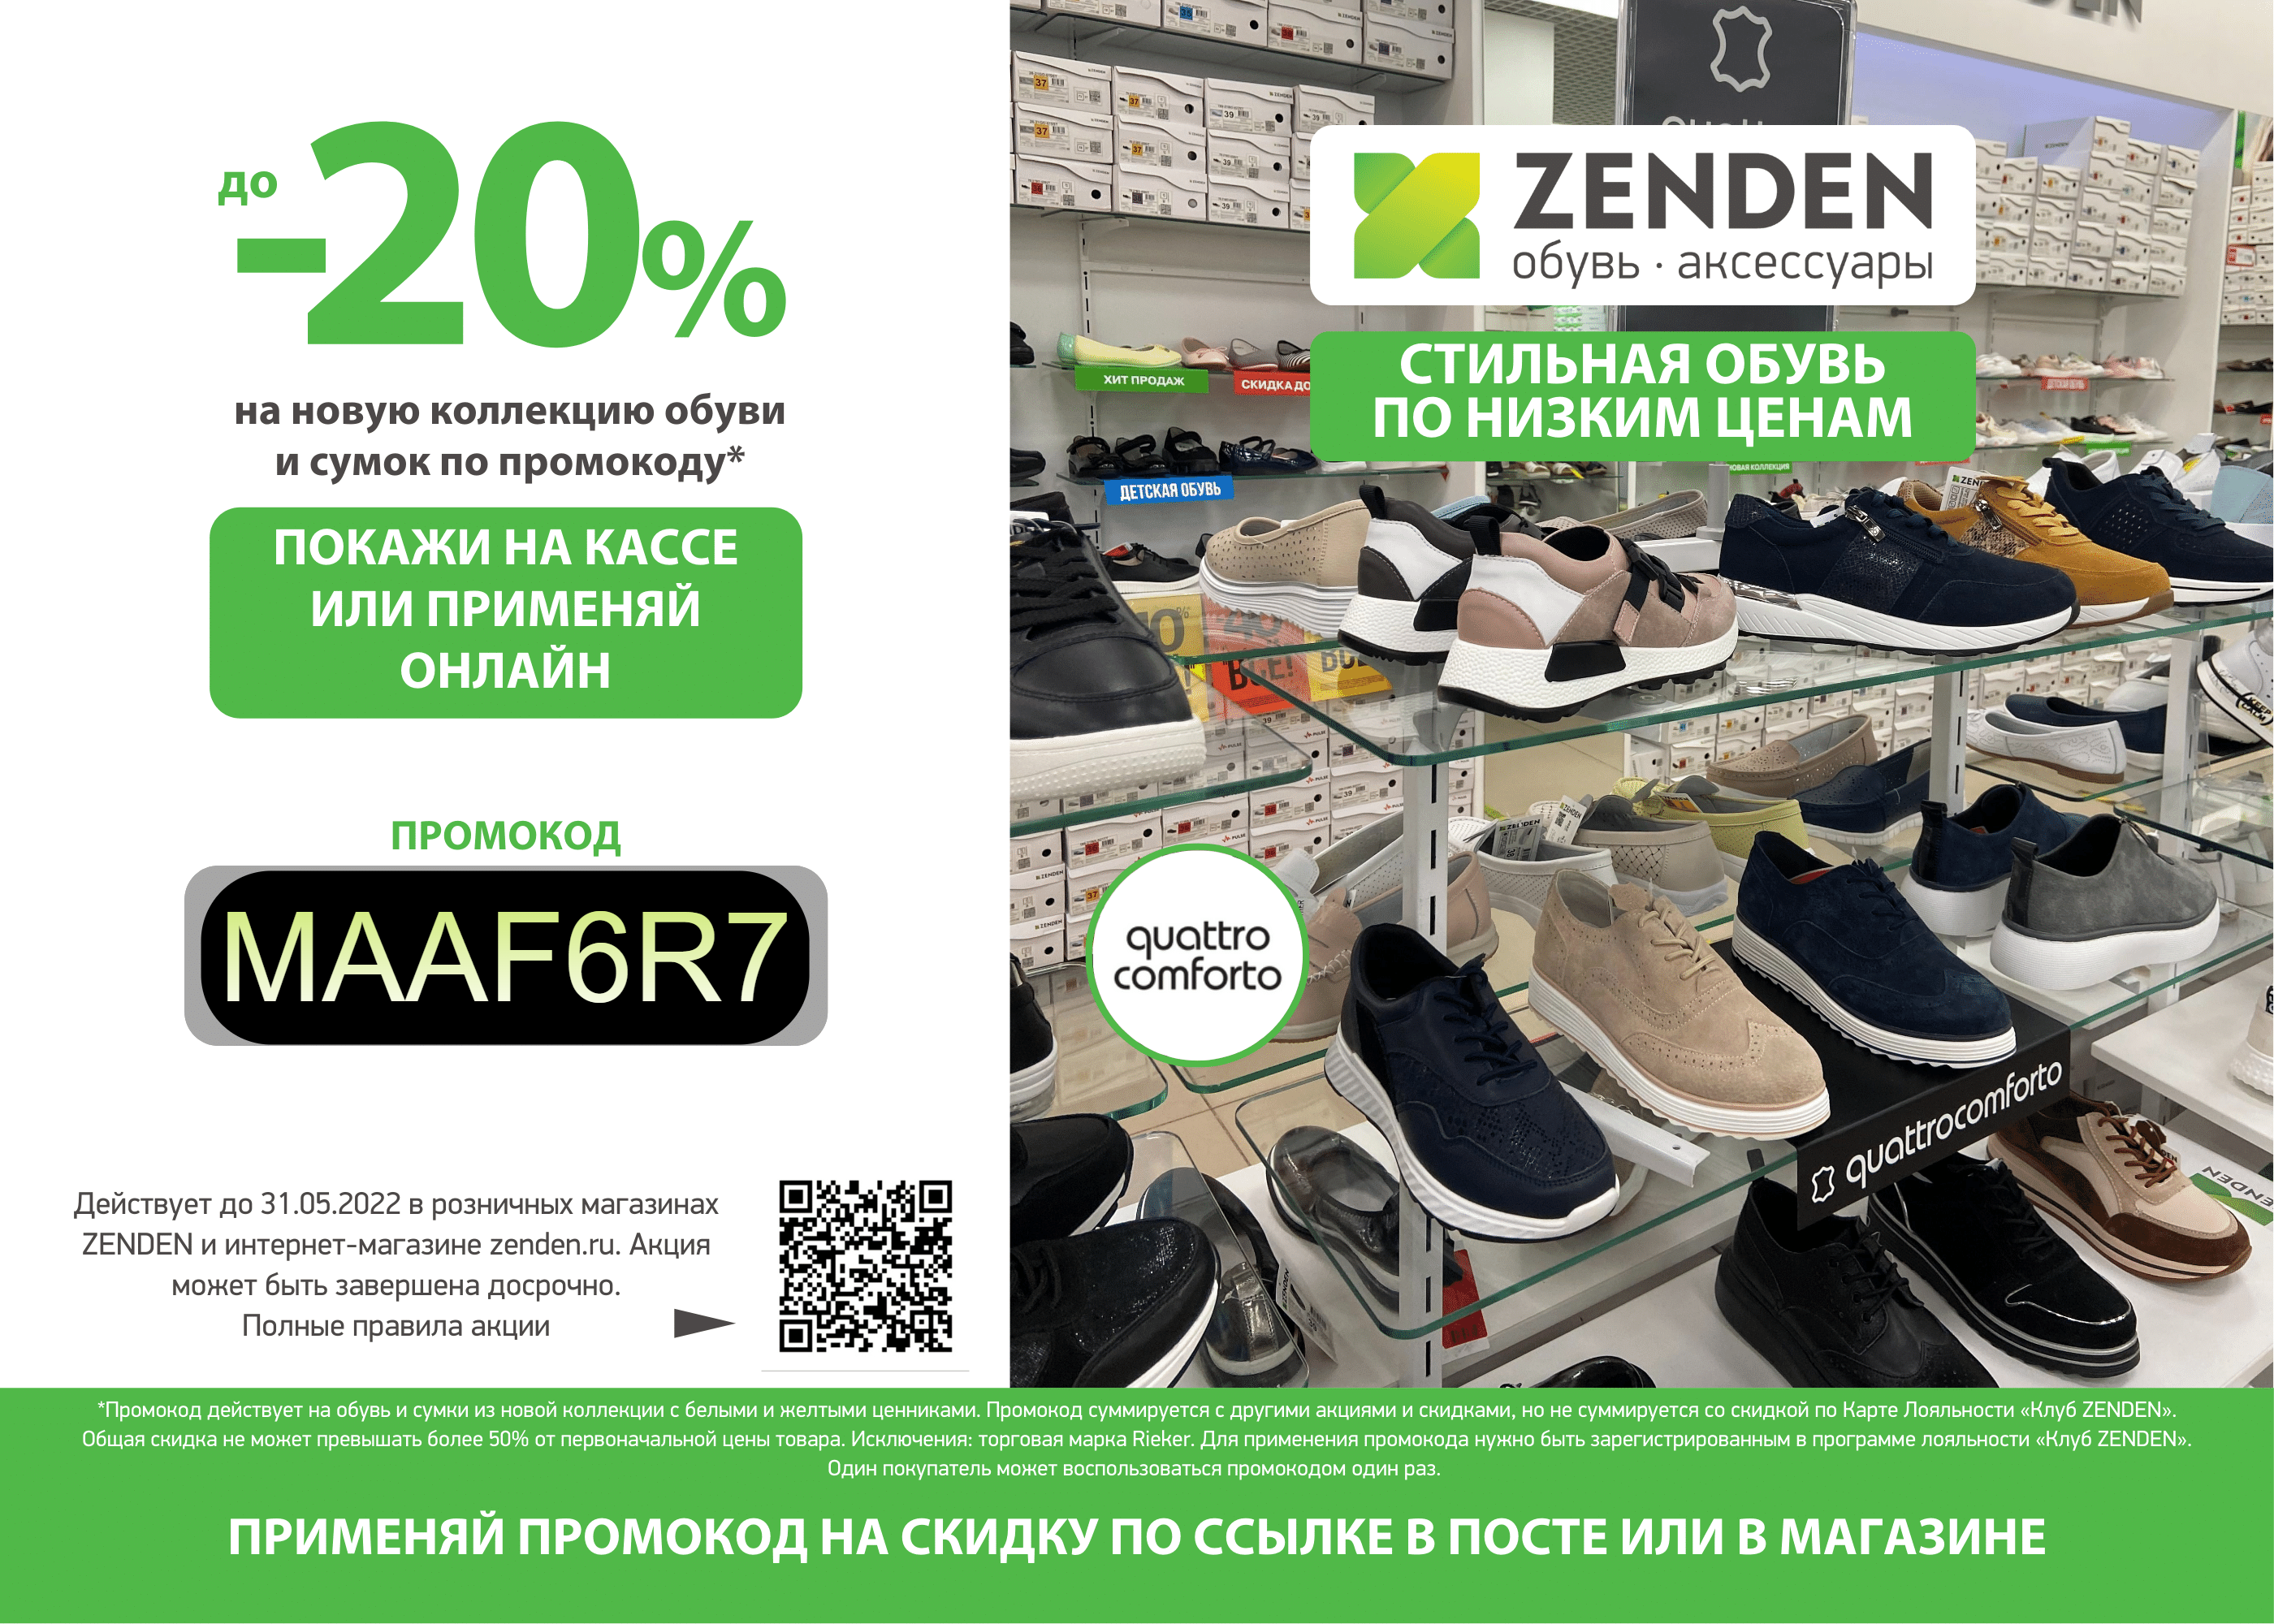 Зенден каталог обуви брянск цены. Зенден Кыштым. Zenden акции. 2+1 Зенден. Зенден каталог обуви.